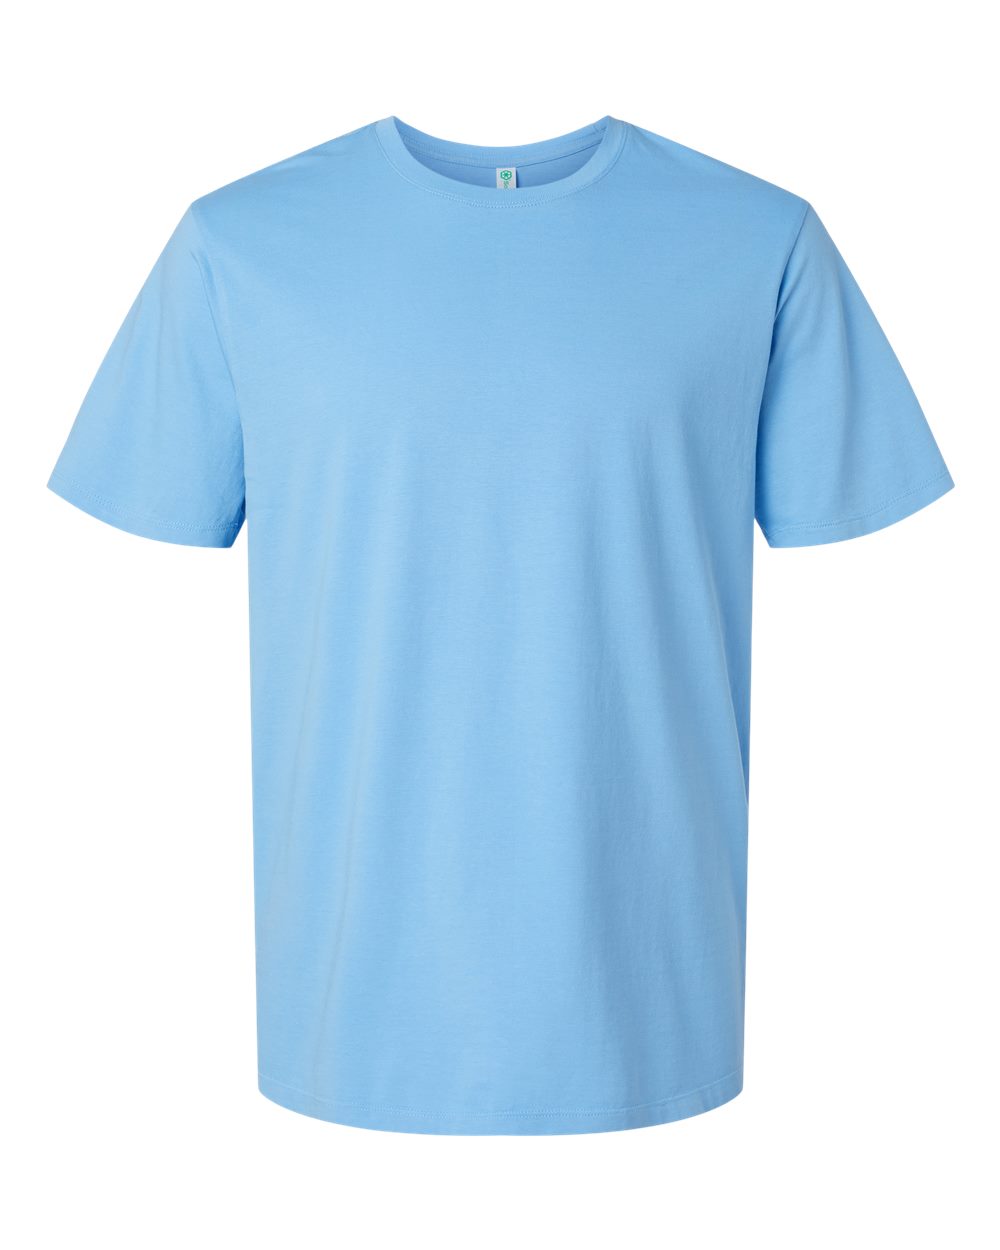 SoftShirts 200 - Classic T-Shirt